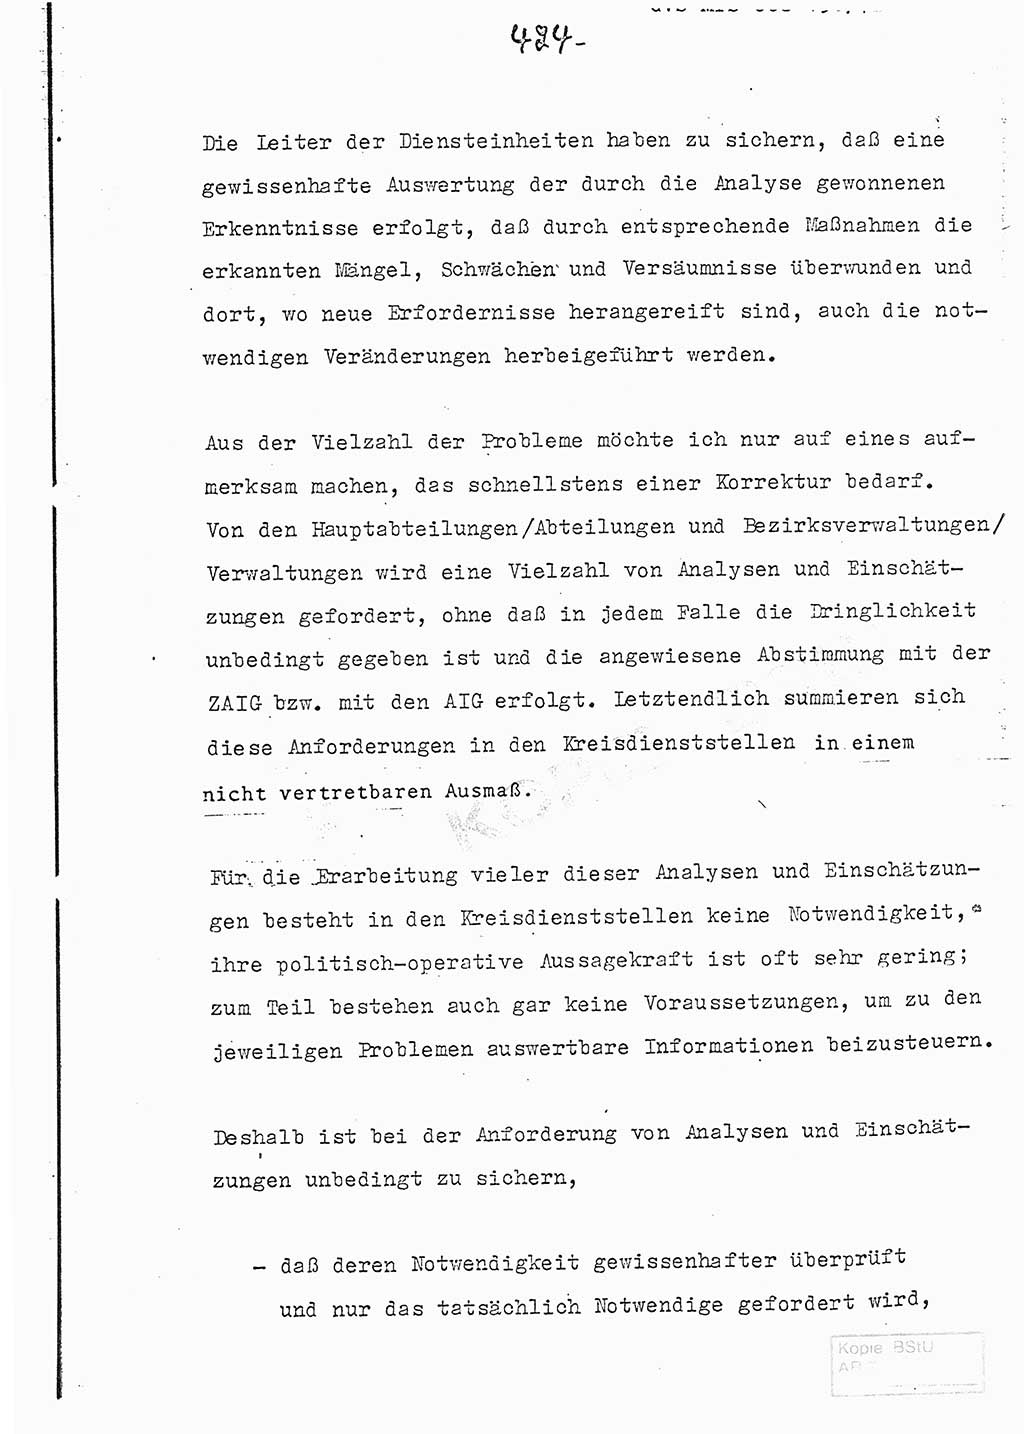 Referat (Entwurf) des Genossen Minister (Generaloberst Erich Mielke) auf der Dienstkonferenz 1972, Ministerium für Staatssicherheit (MfS) [Deutsche Demokratische Republik (DDR)], Der Minister, Geheime Verschlußsache (GVS) 008-150/72, Berlin 25.2.1972, Seite 424 (Ref. Entw. DK MfS DDR Min. GVS 008-150/72 1972, S. 424)